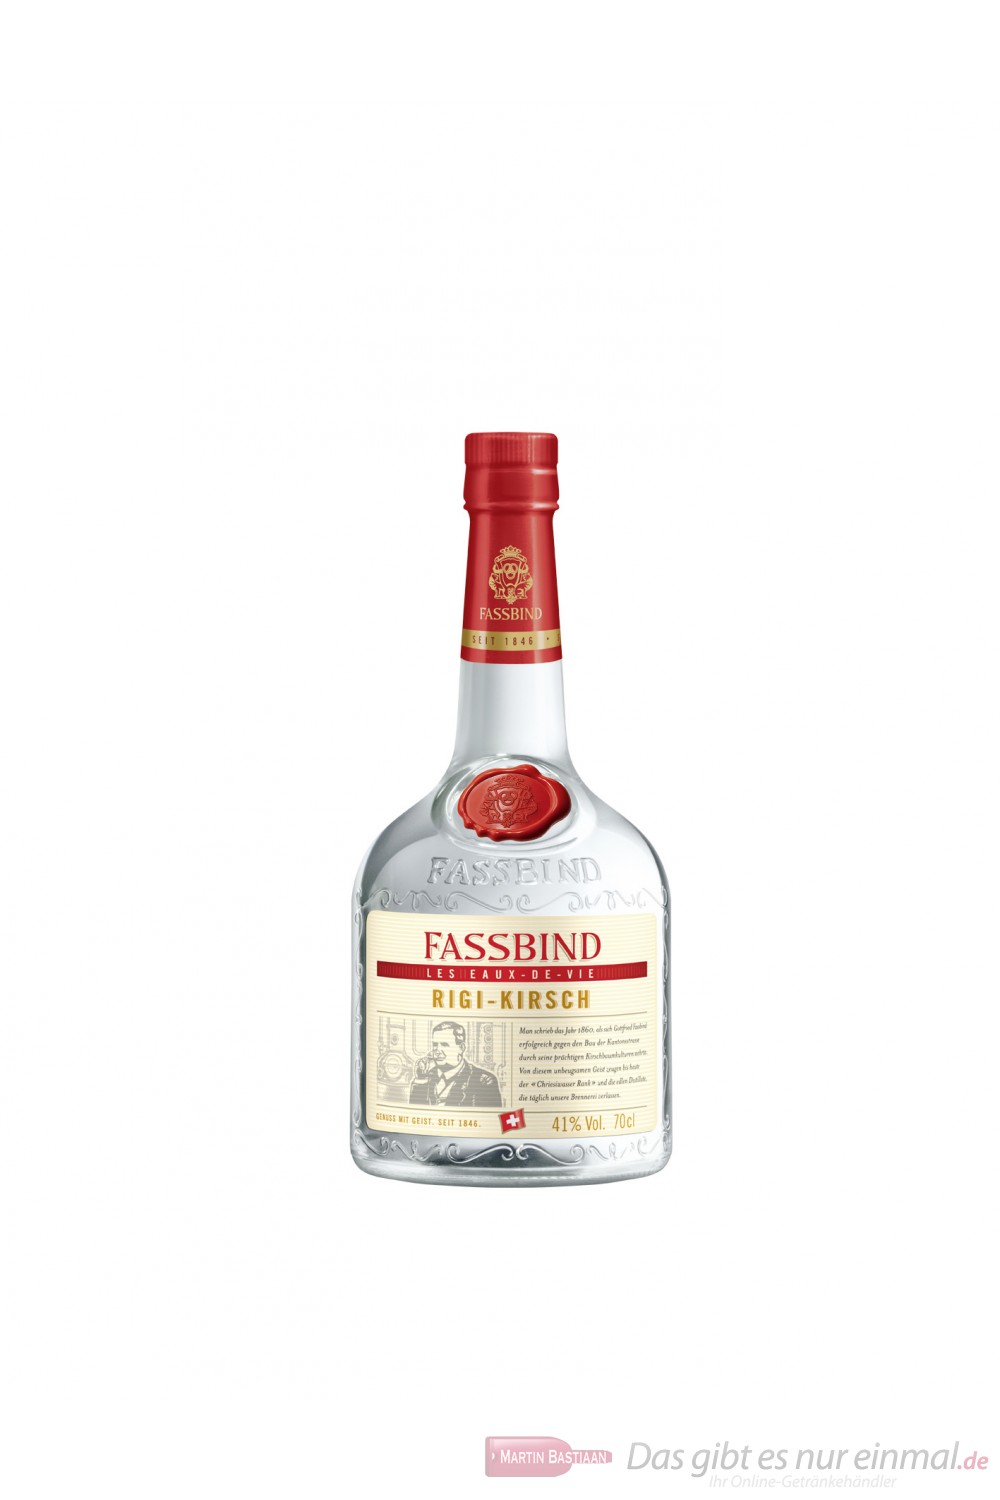 Fassbind Vieux RiGI Kirsch Obstbrand 41% 0,7l Flasche Obstler